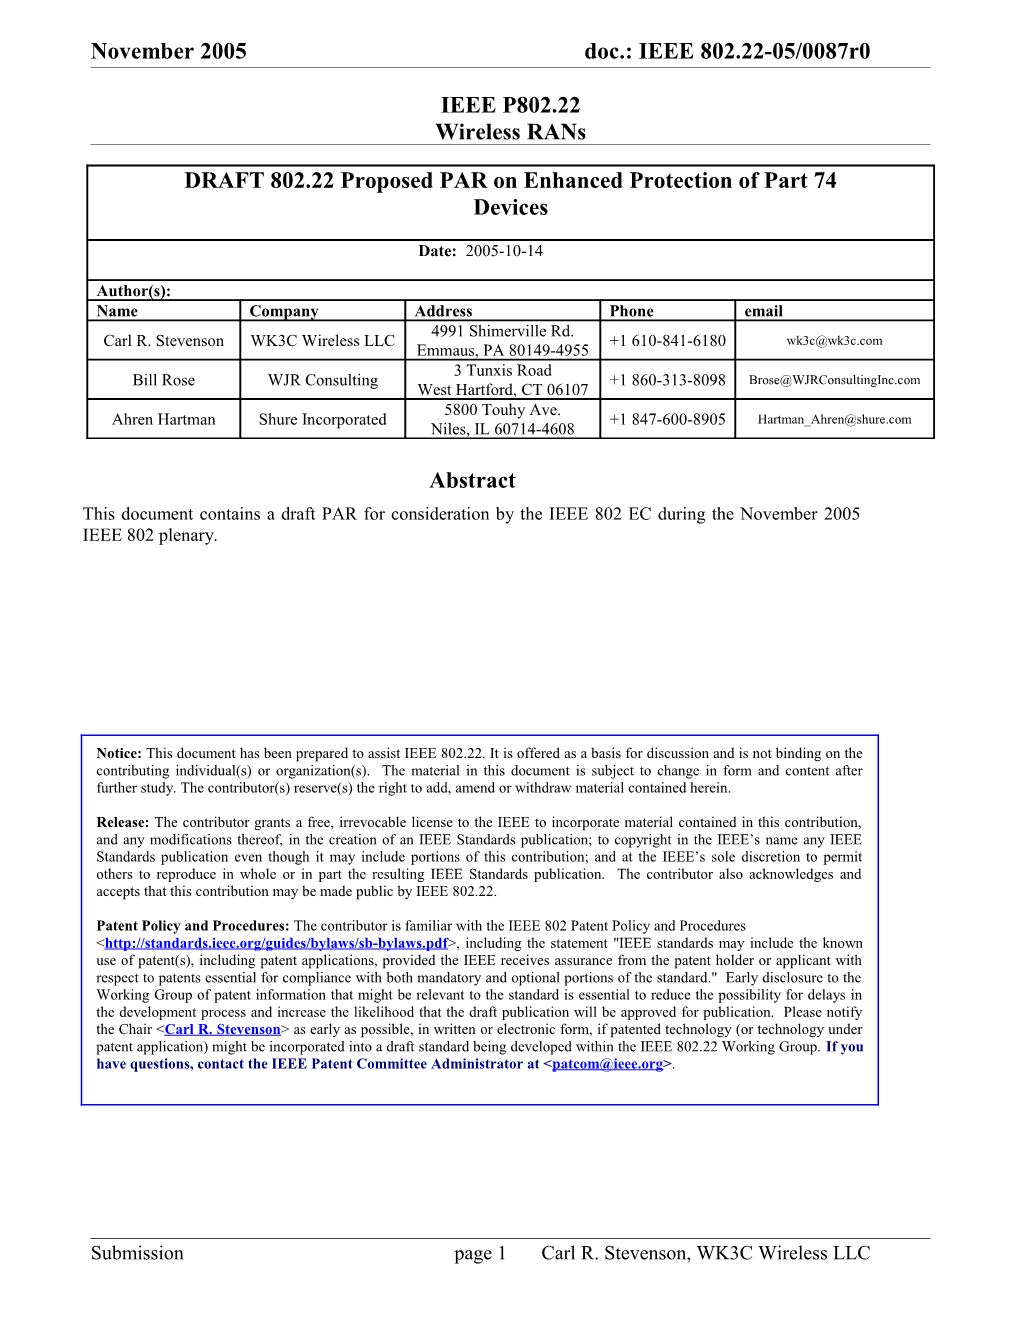 Project Authorization Request (Par) Form - 2005